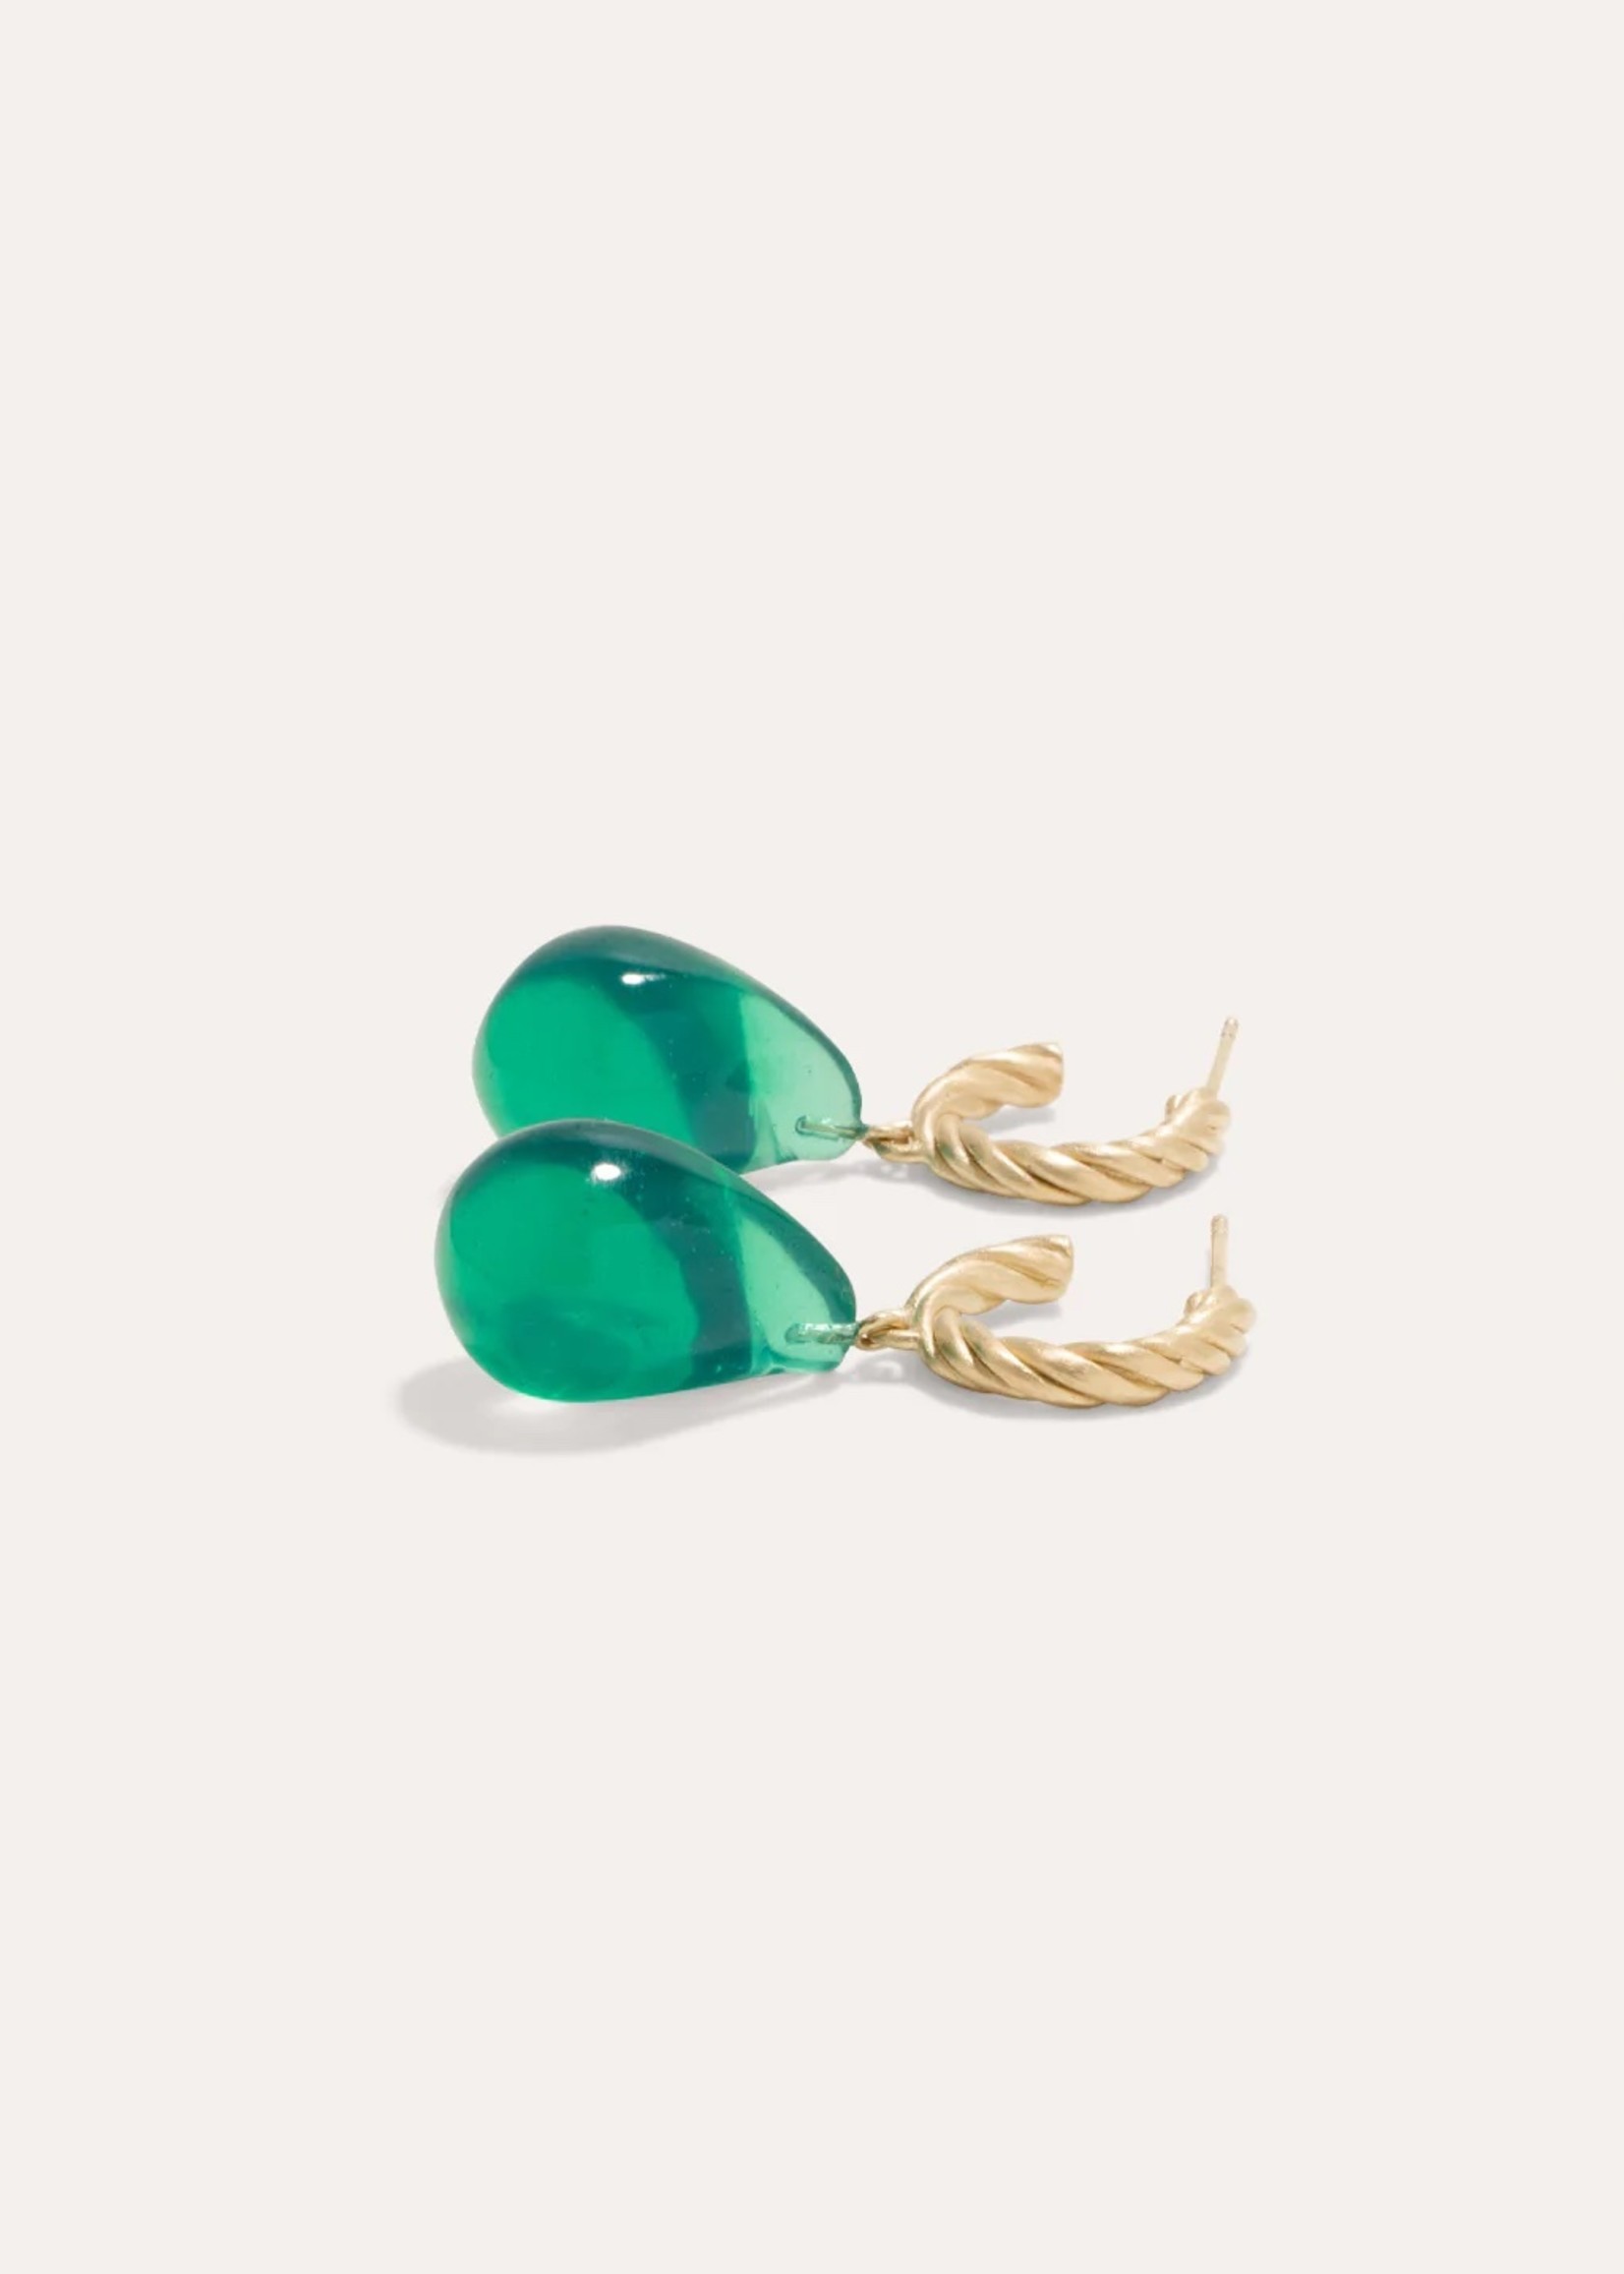 Completedworks Braided Hoop Earrings with Green Resin Drop